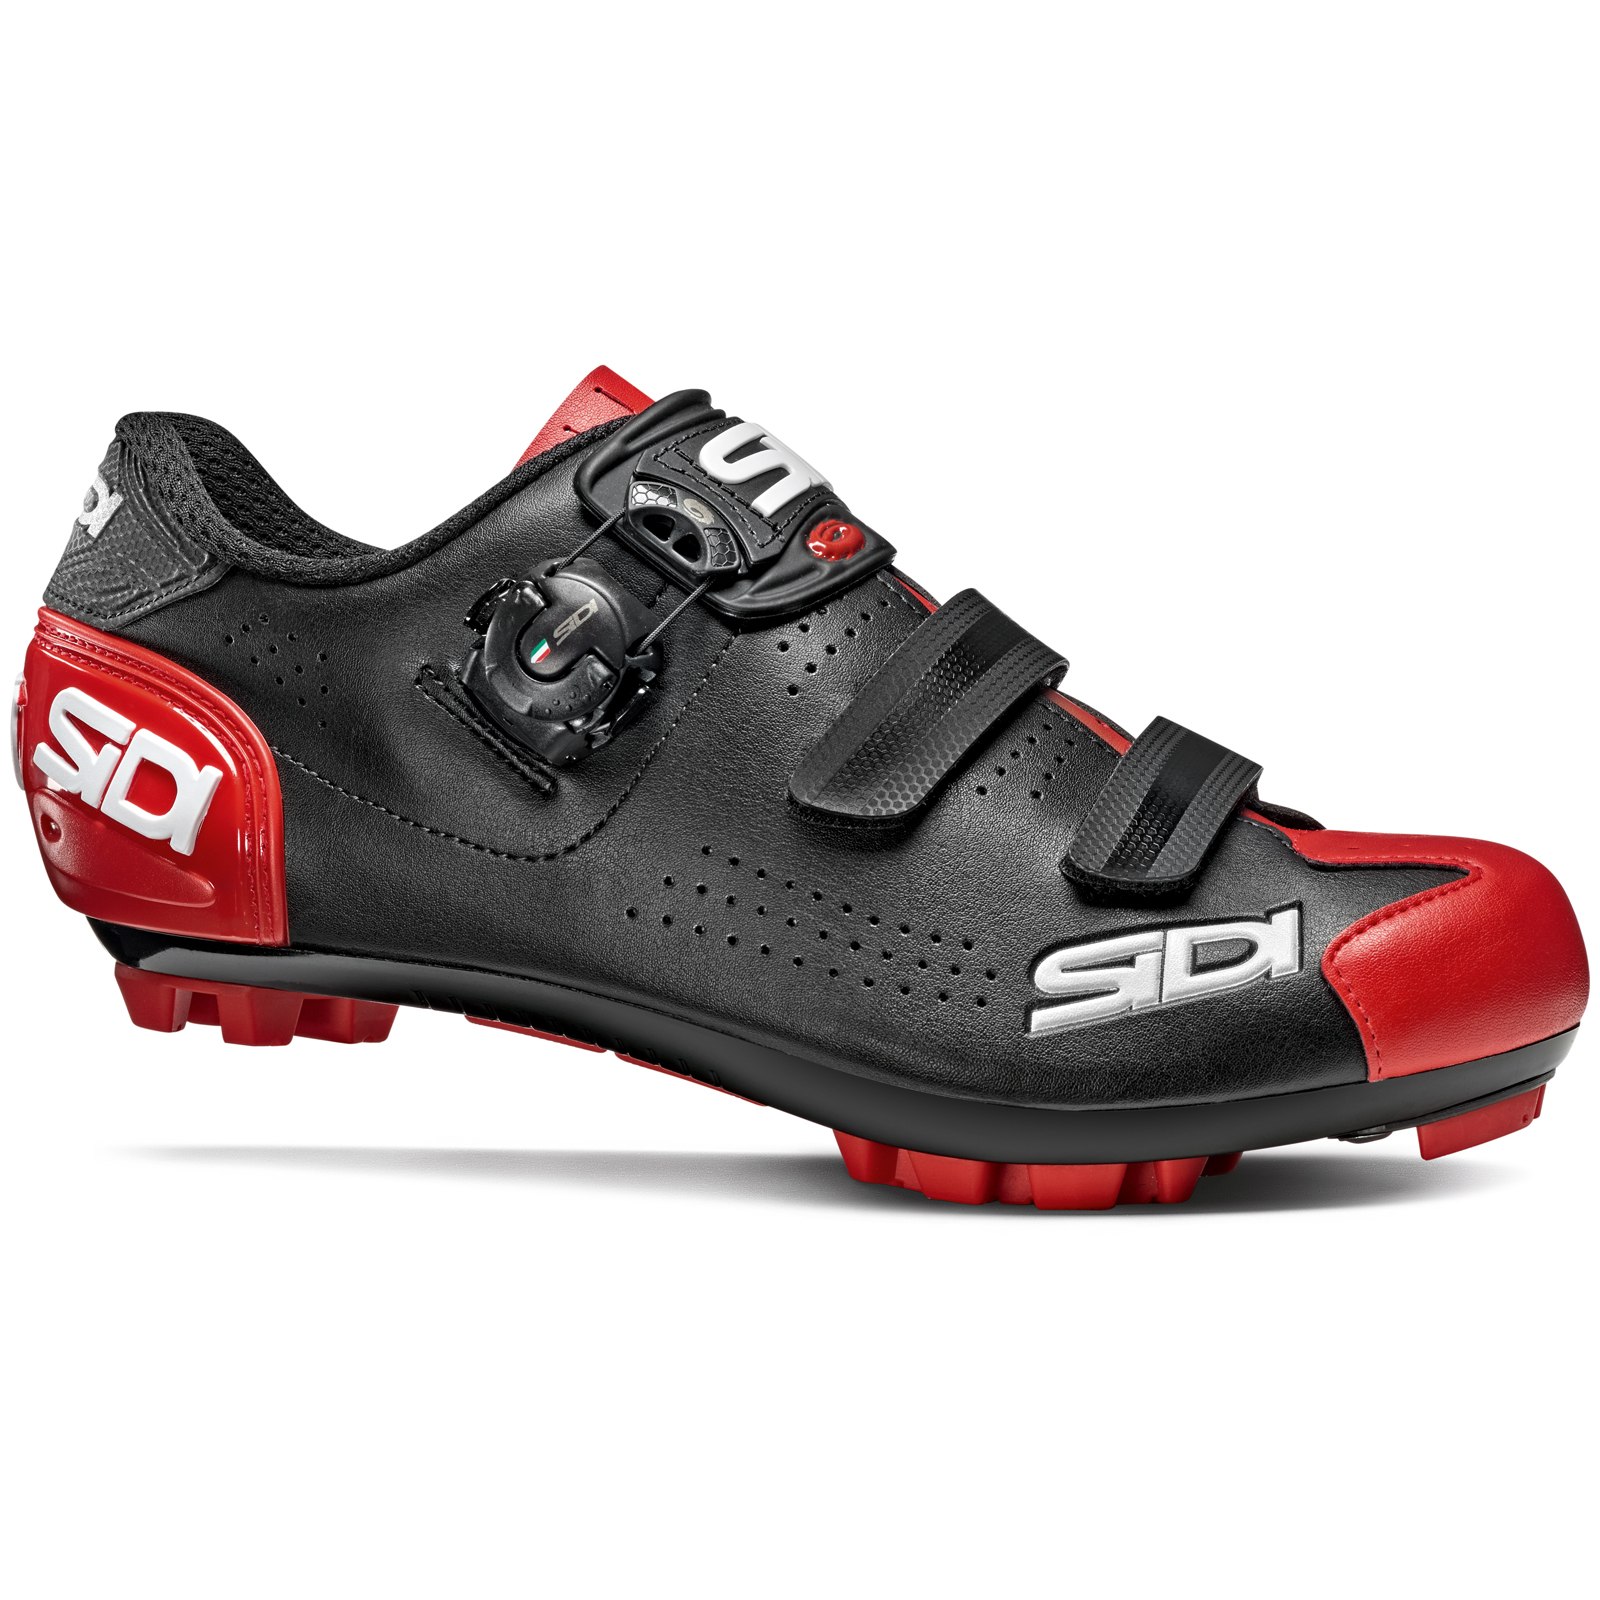 Produktbild von Sidi Trace 2 MTB Schuhe - schwarz/rot